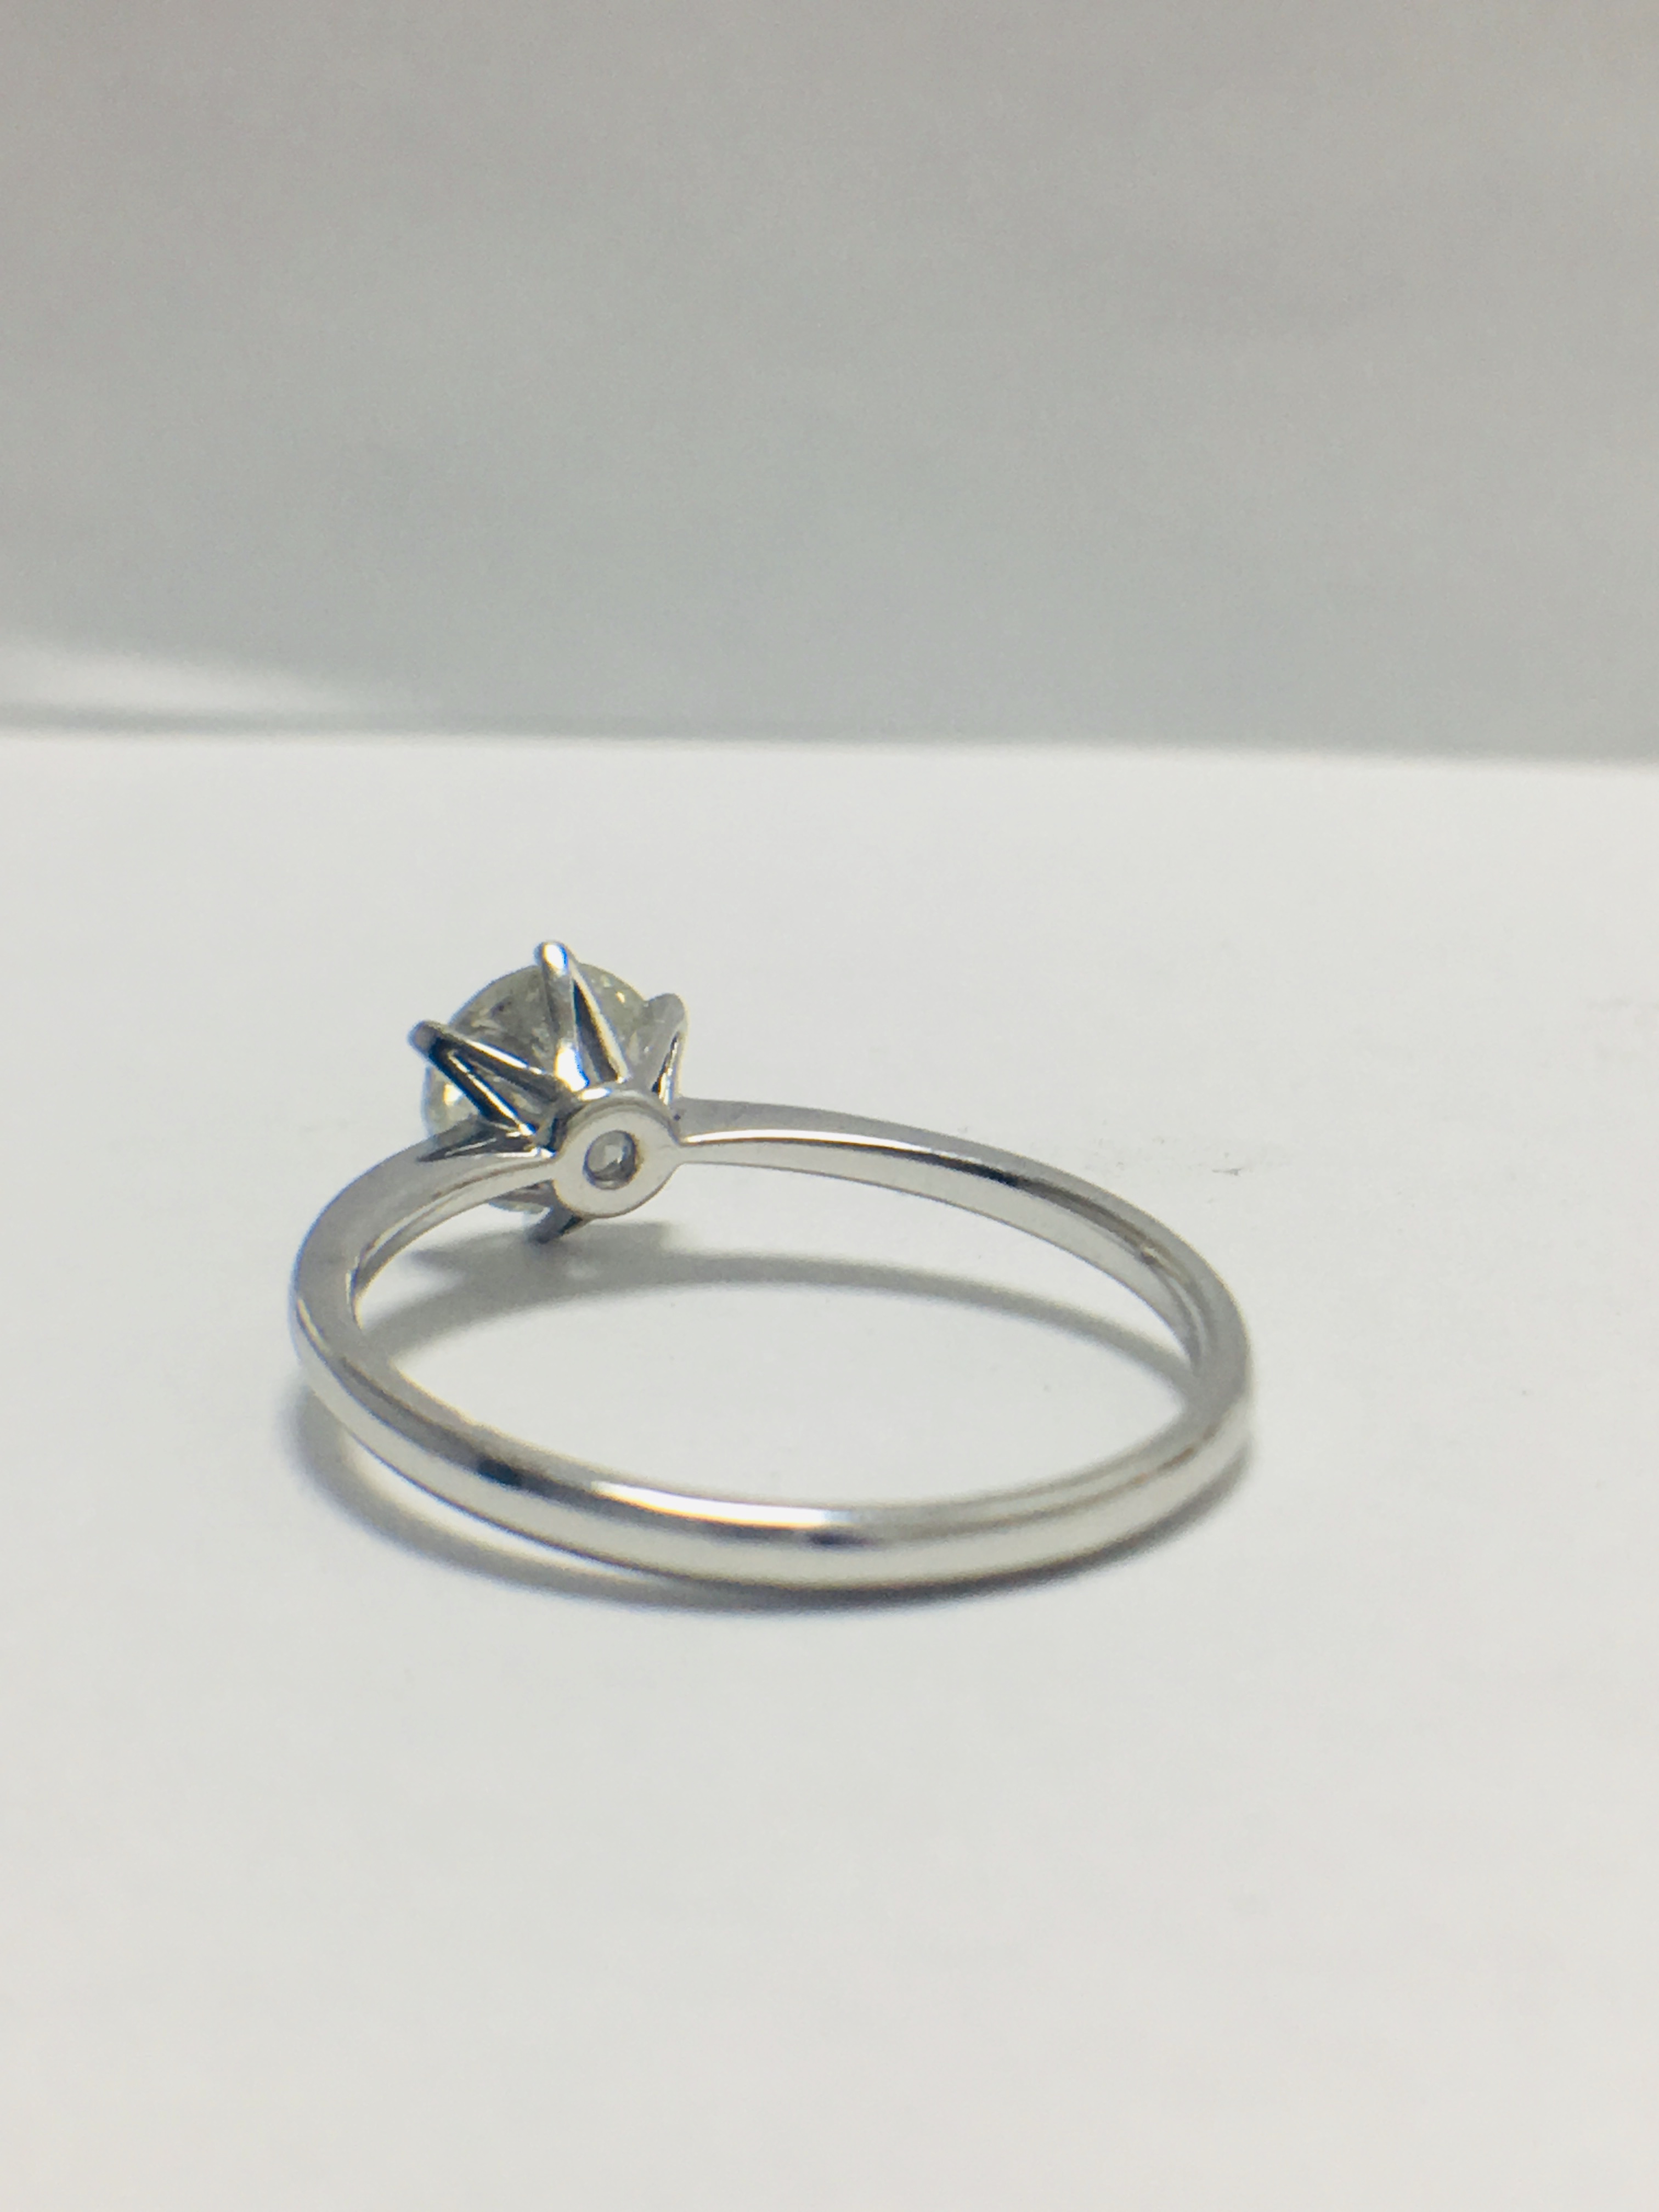 1ct platinum Diamond solitaire ring - Image 4 of 10